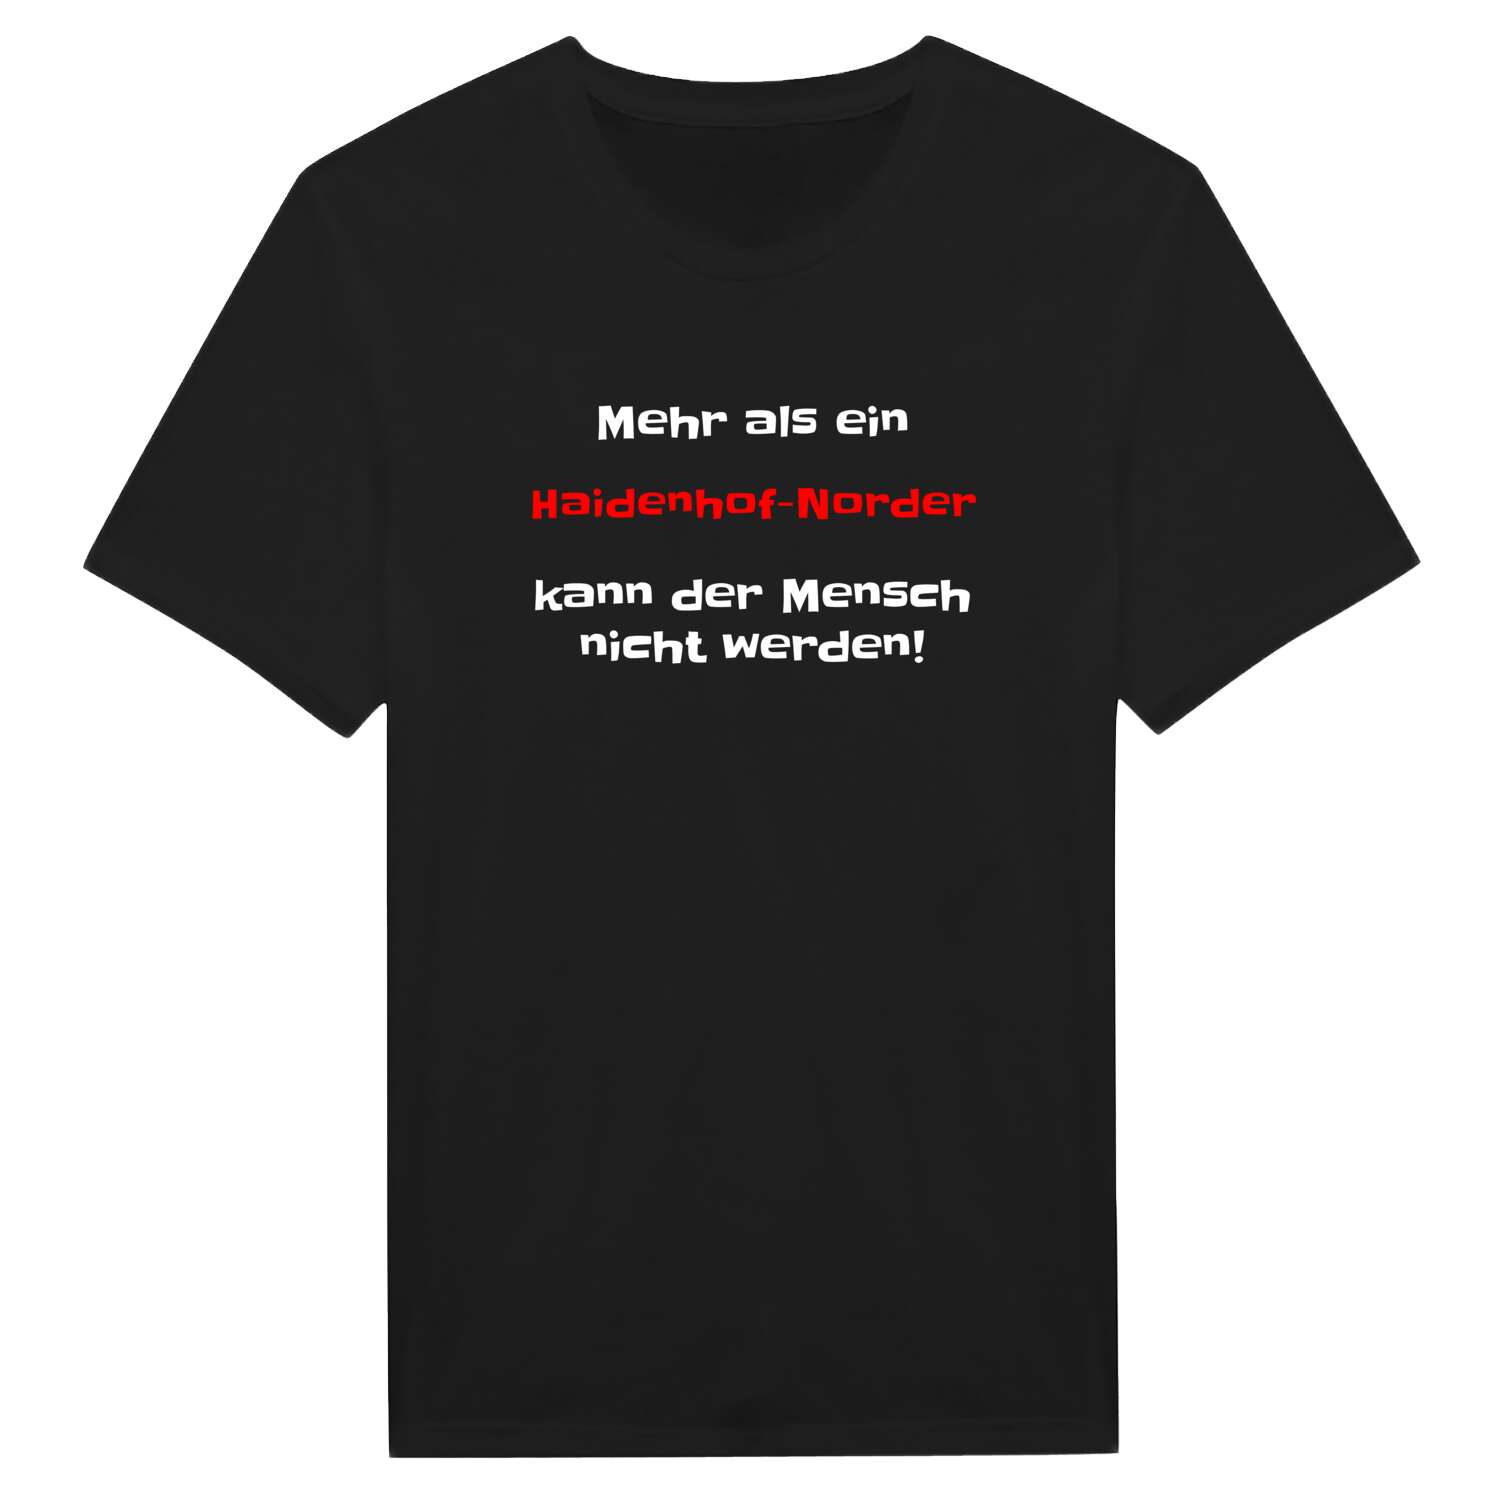 Haidenhof-Nord T-Shirt »Mehr als ein«